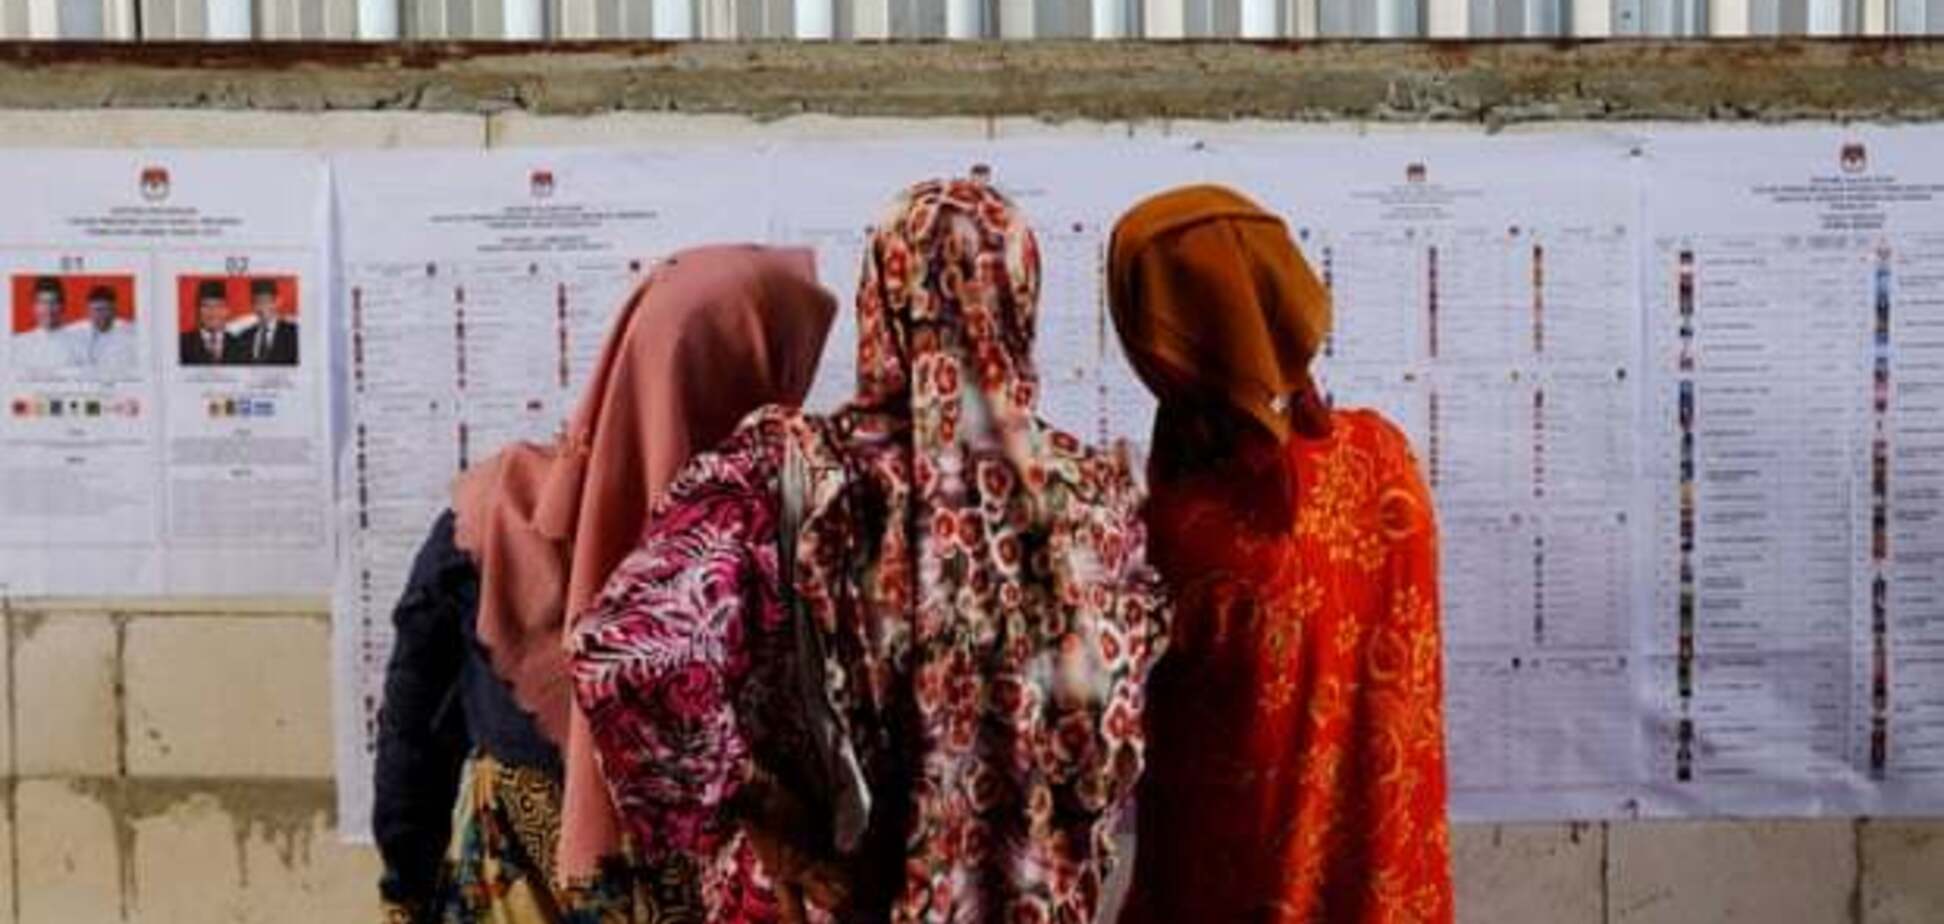 Померли майже 300 осіб: як в Індонезії вибори перетворилися на трагедію